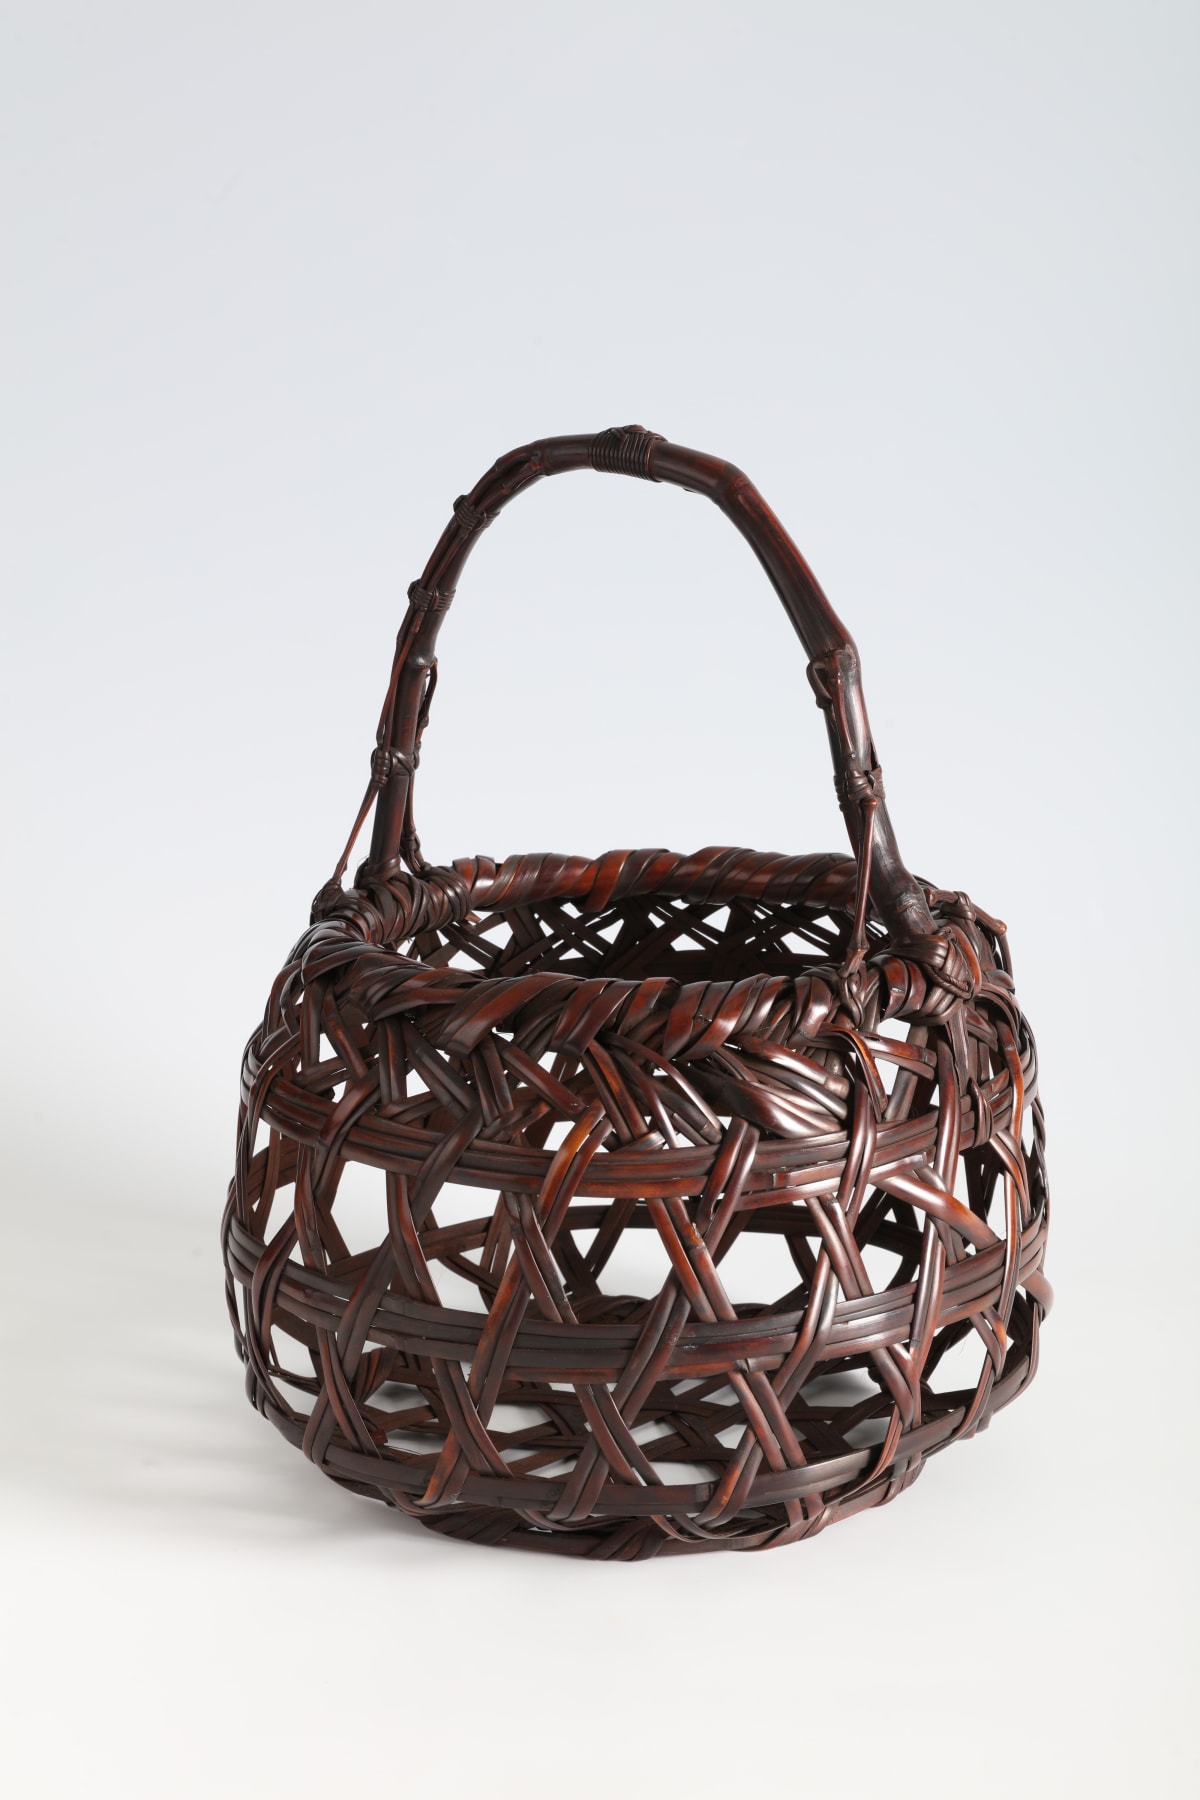 Baskets | Thomsen Gallery